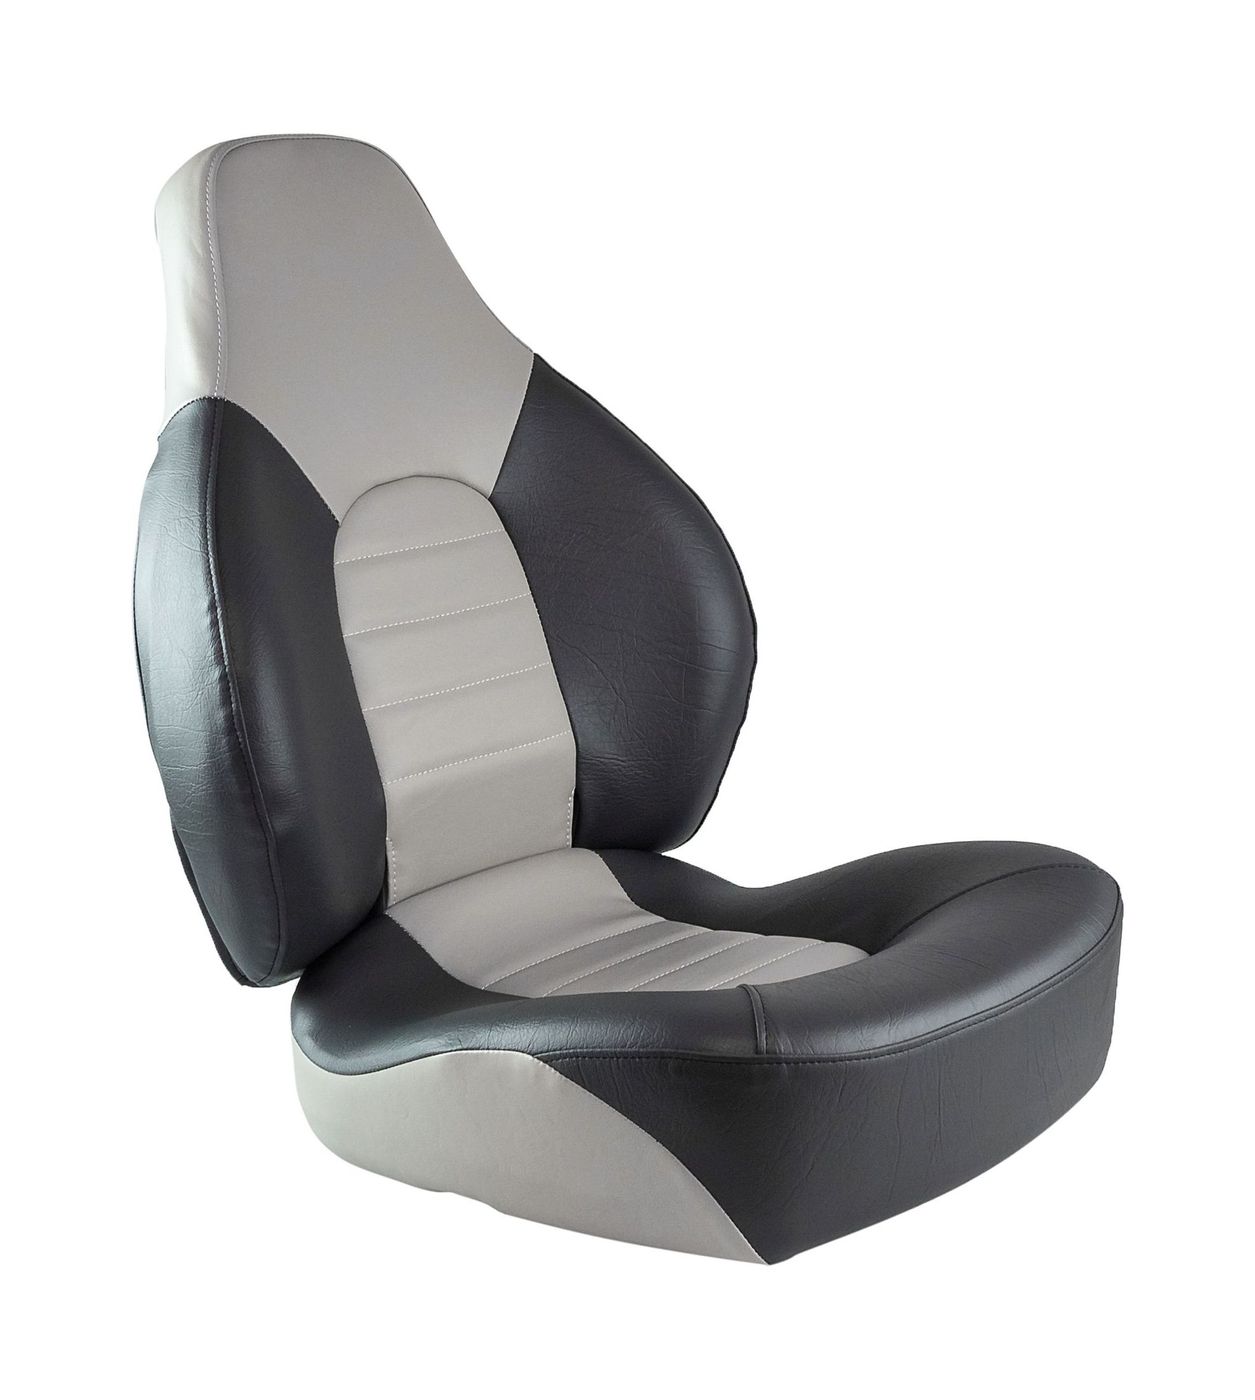 Кресло складное мягкое FISH PRO, серый/темно-серый 1041633 кресло складное мягкое skipper серый темно серый 1061017